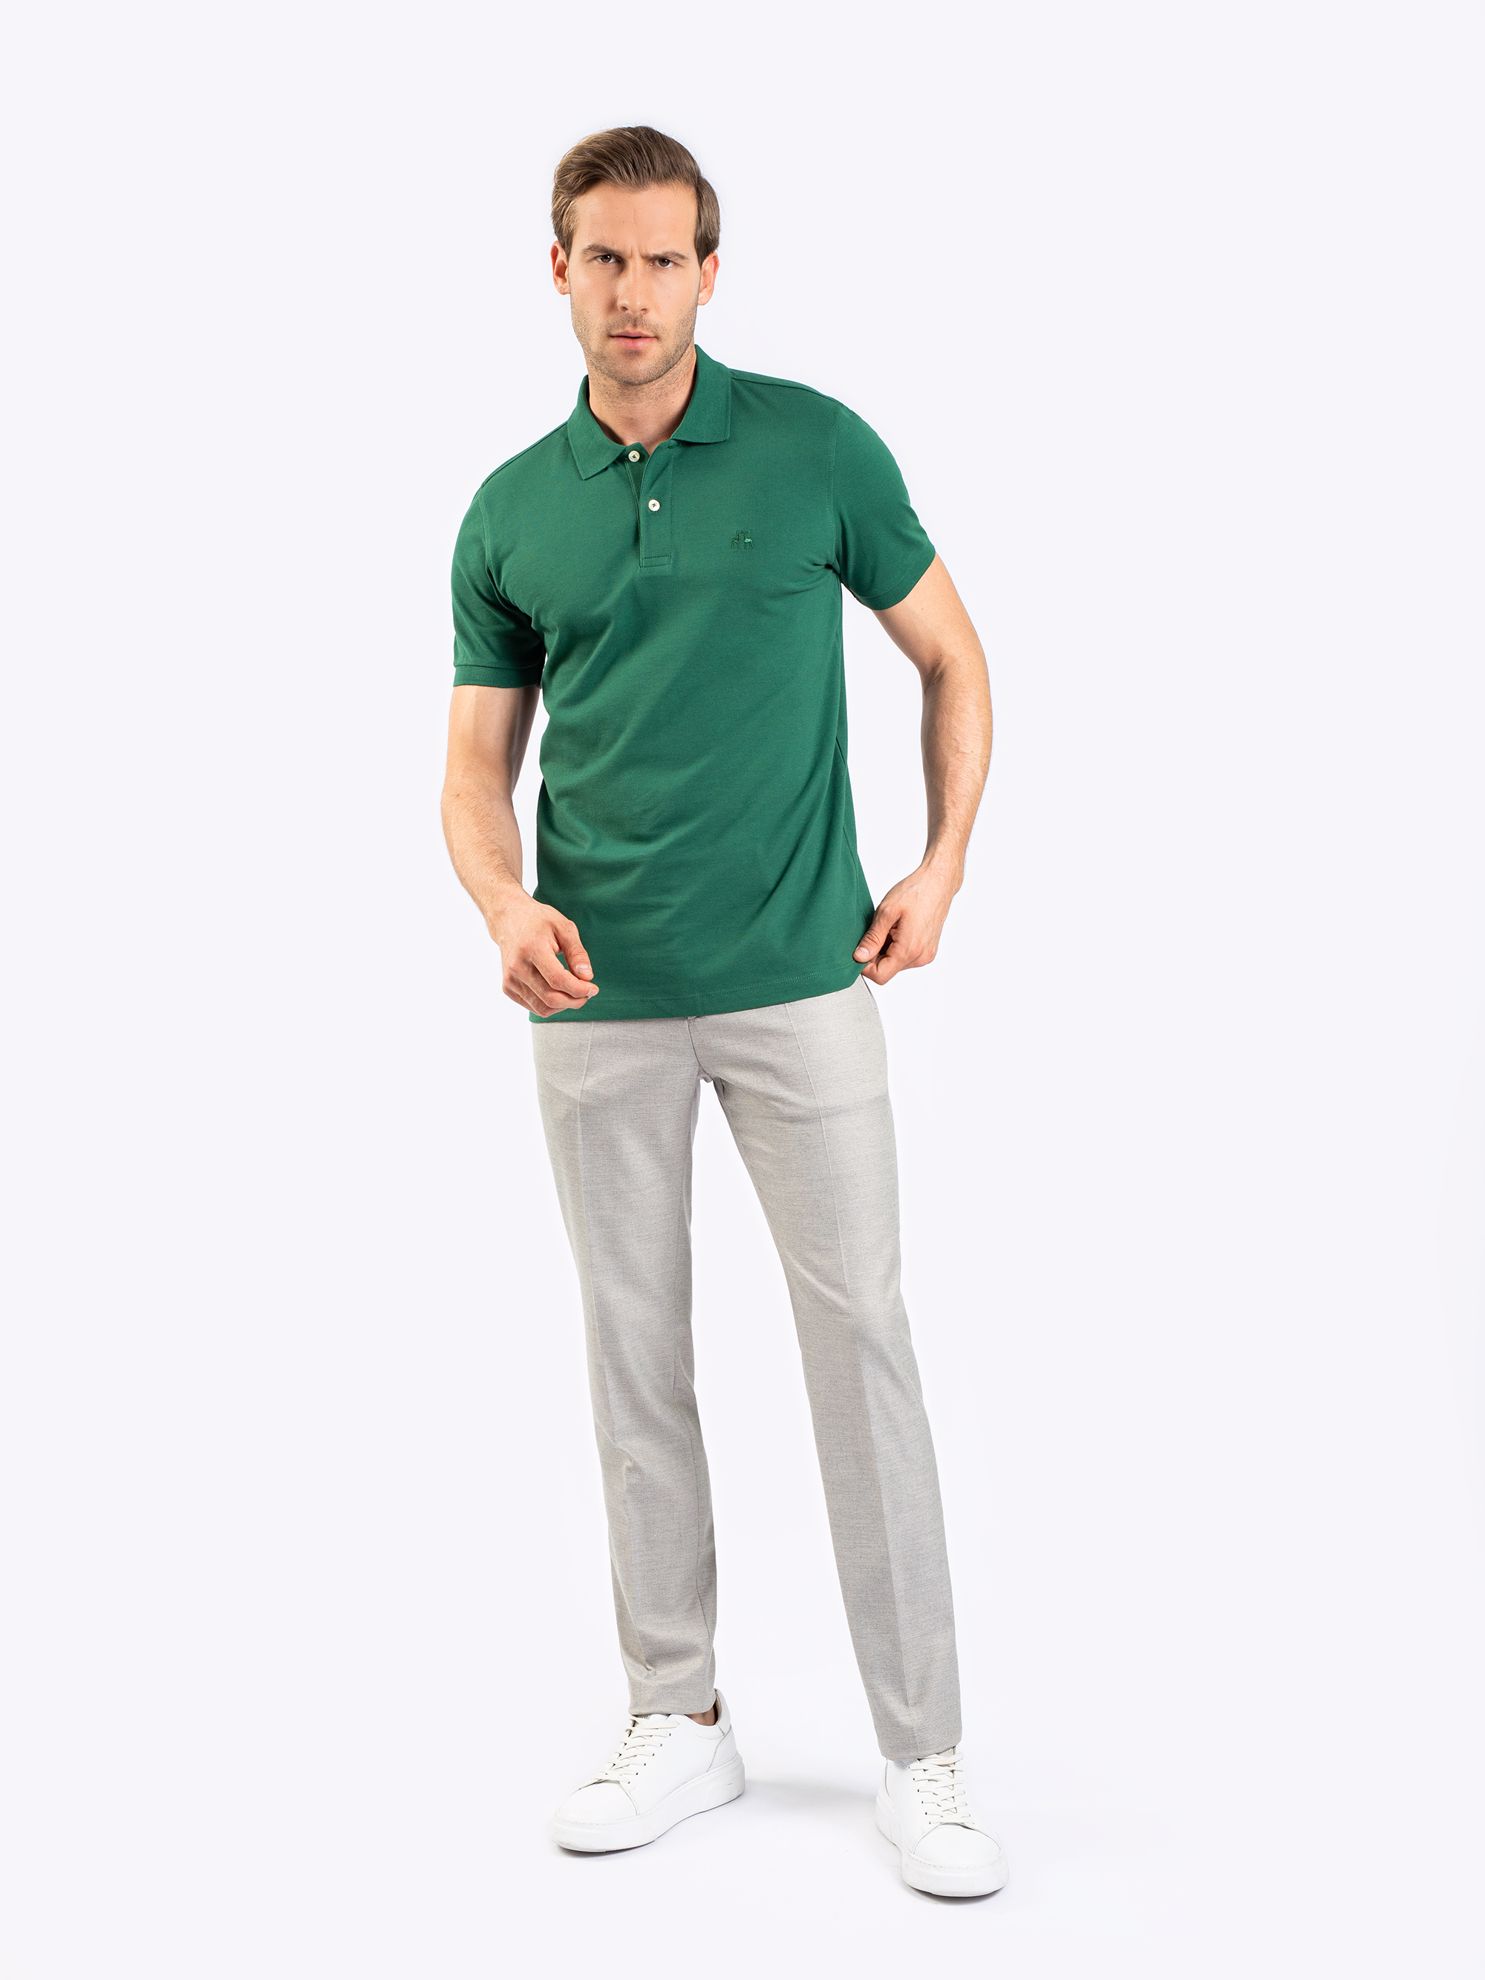 Karaca Erkek Slim Fit Polo Yaka Tişört-Çimen Yeşili. ürün görseli